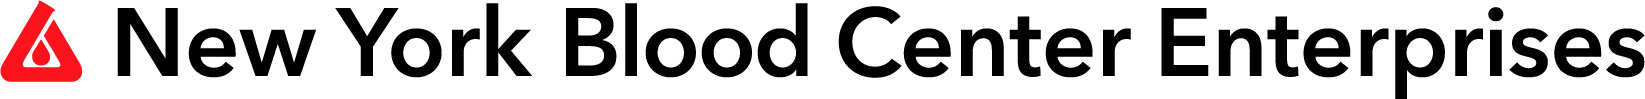 nybce-logo